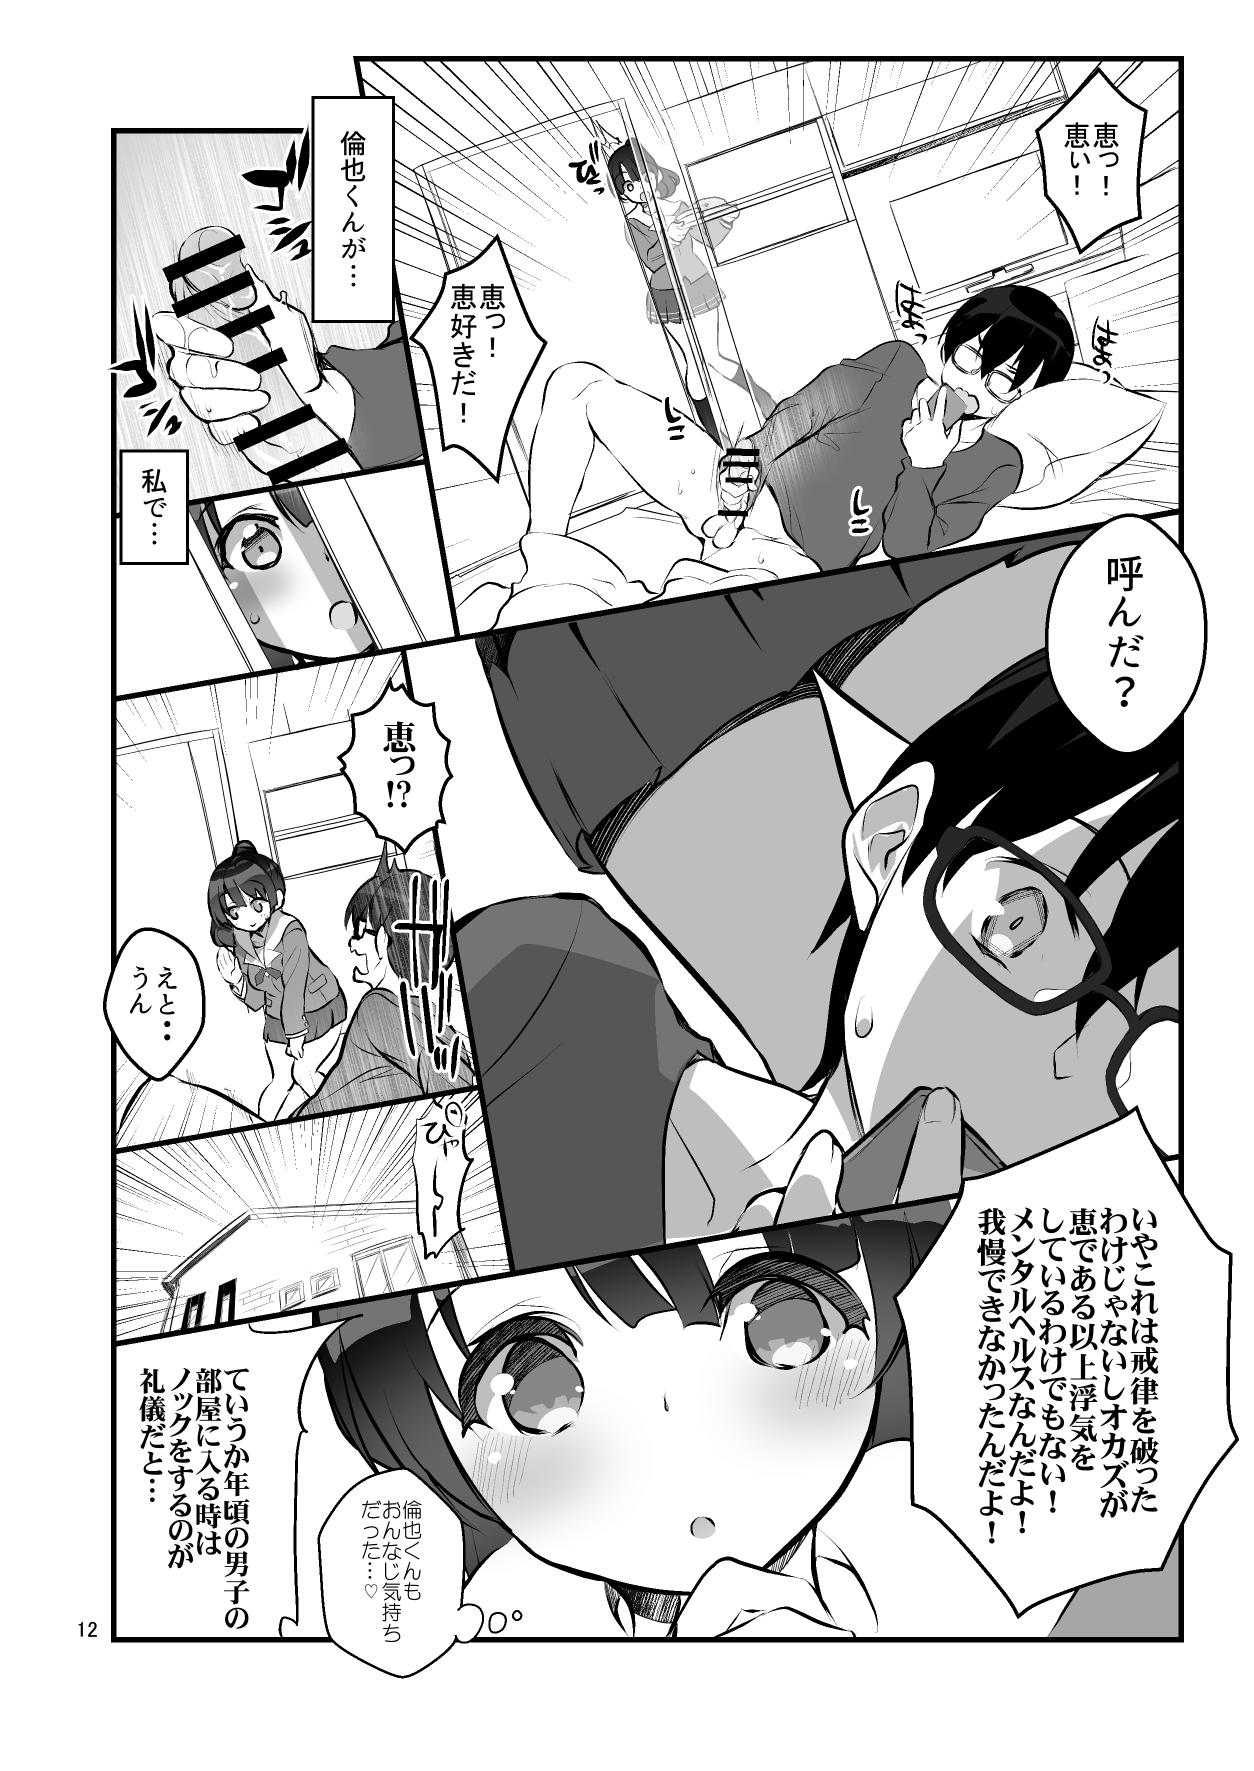 Matures Futsukano wa Wotakare no Megane o Toru. 2 - Saenai heroine no sodatekata Fun - Page 12